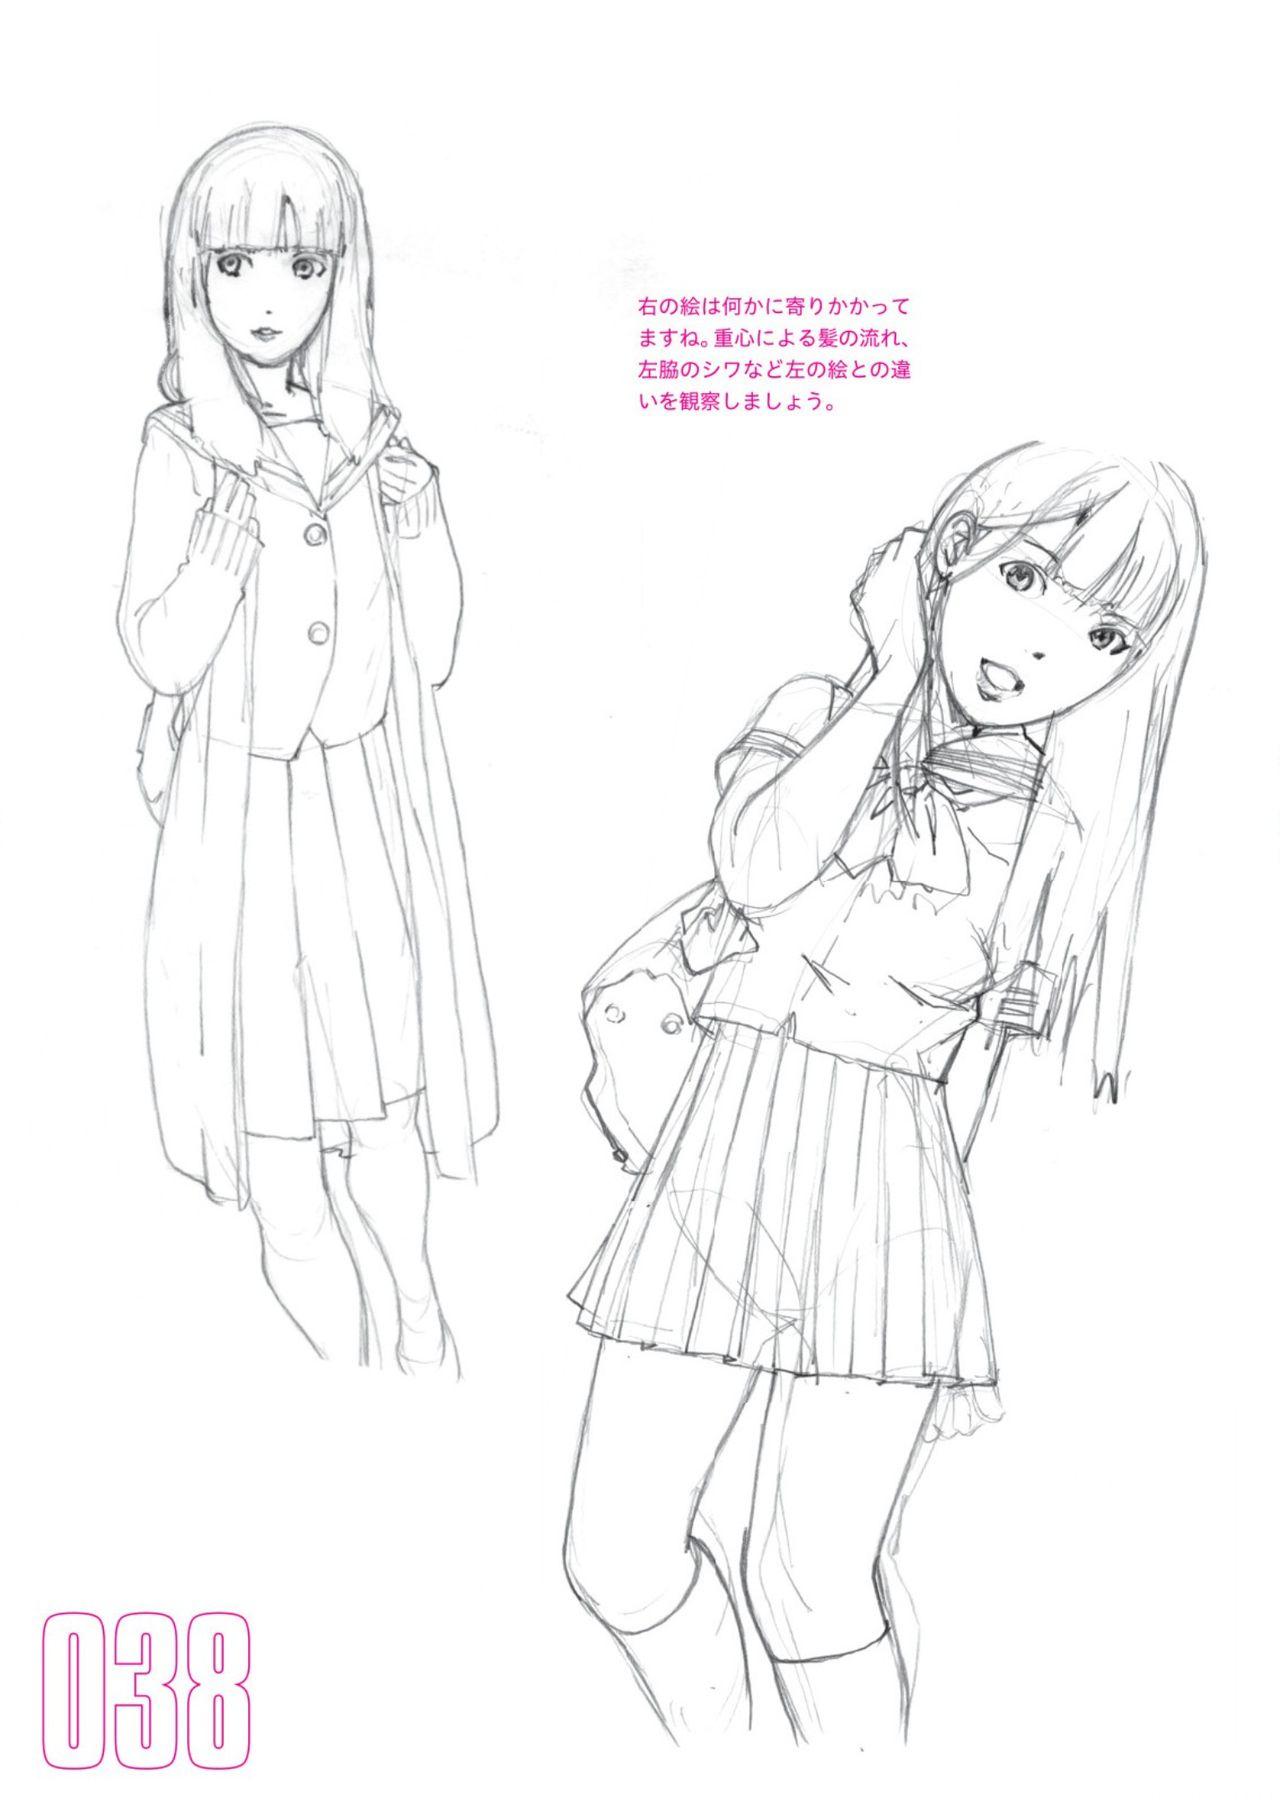 Toru Yoshida Tips for drawing women in 10 minutes 270 Uniforms 39